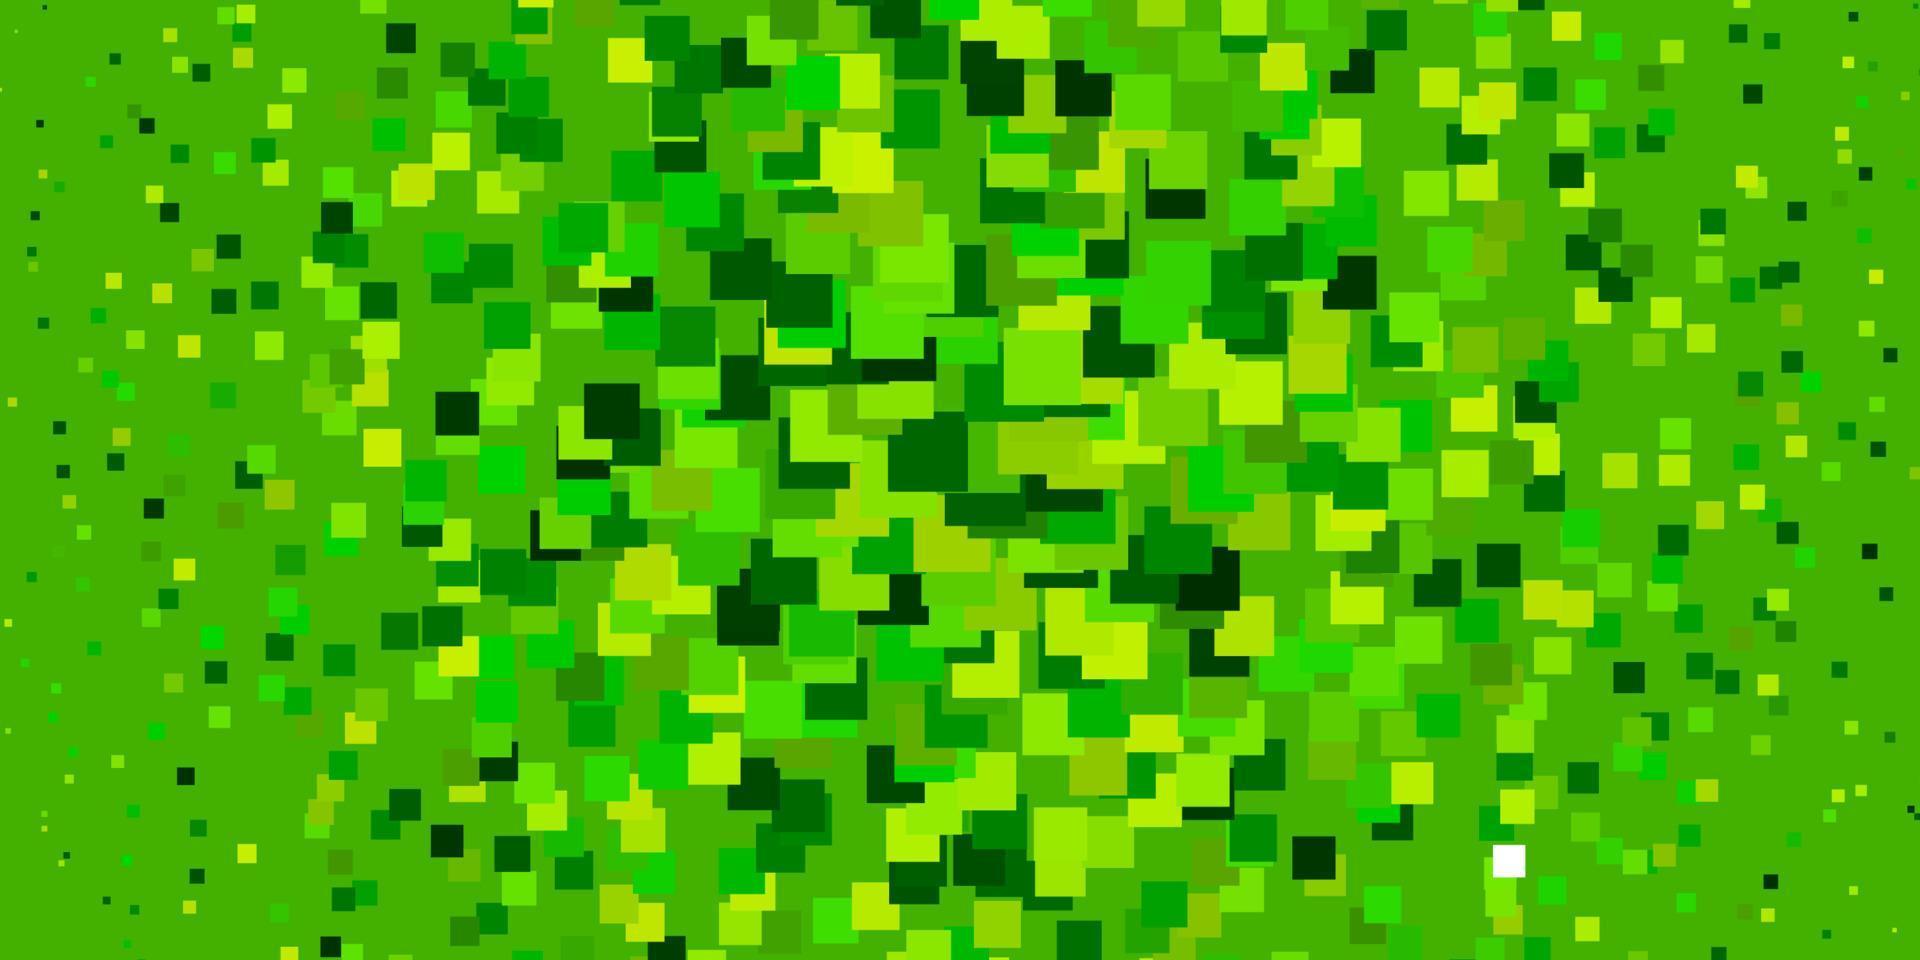 plantilla de vector verde claro con rectángulos.